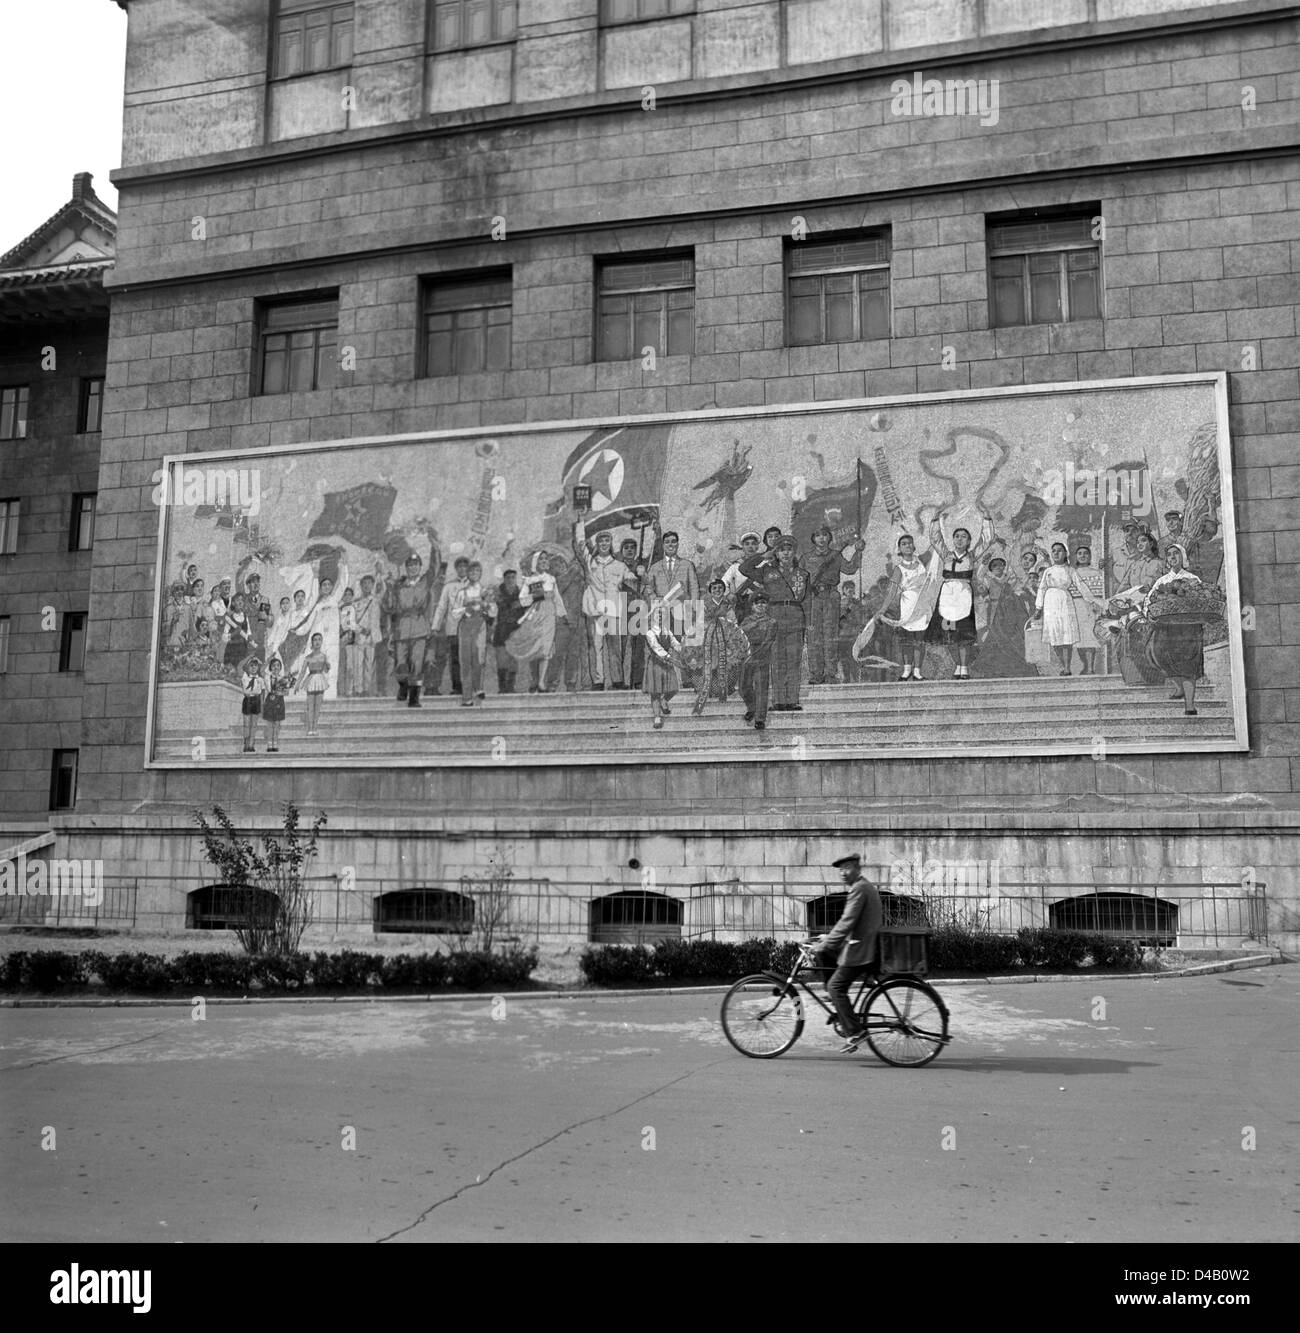 Peinture socialiste sur le mur de la Grand Théâtre de Pyongyang, la capitale de la République populaire démocratique de Corée, photographié le 7 novembre en 1971. Photo : ddrbildarchiv.de / Klaus Morgenstern - GESPERRT FÜR BILDFUNK Banque D'Images